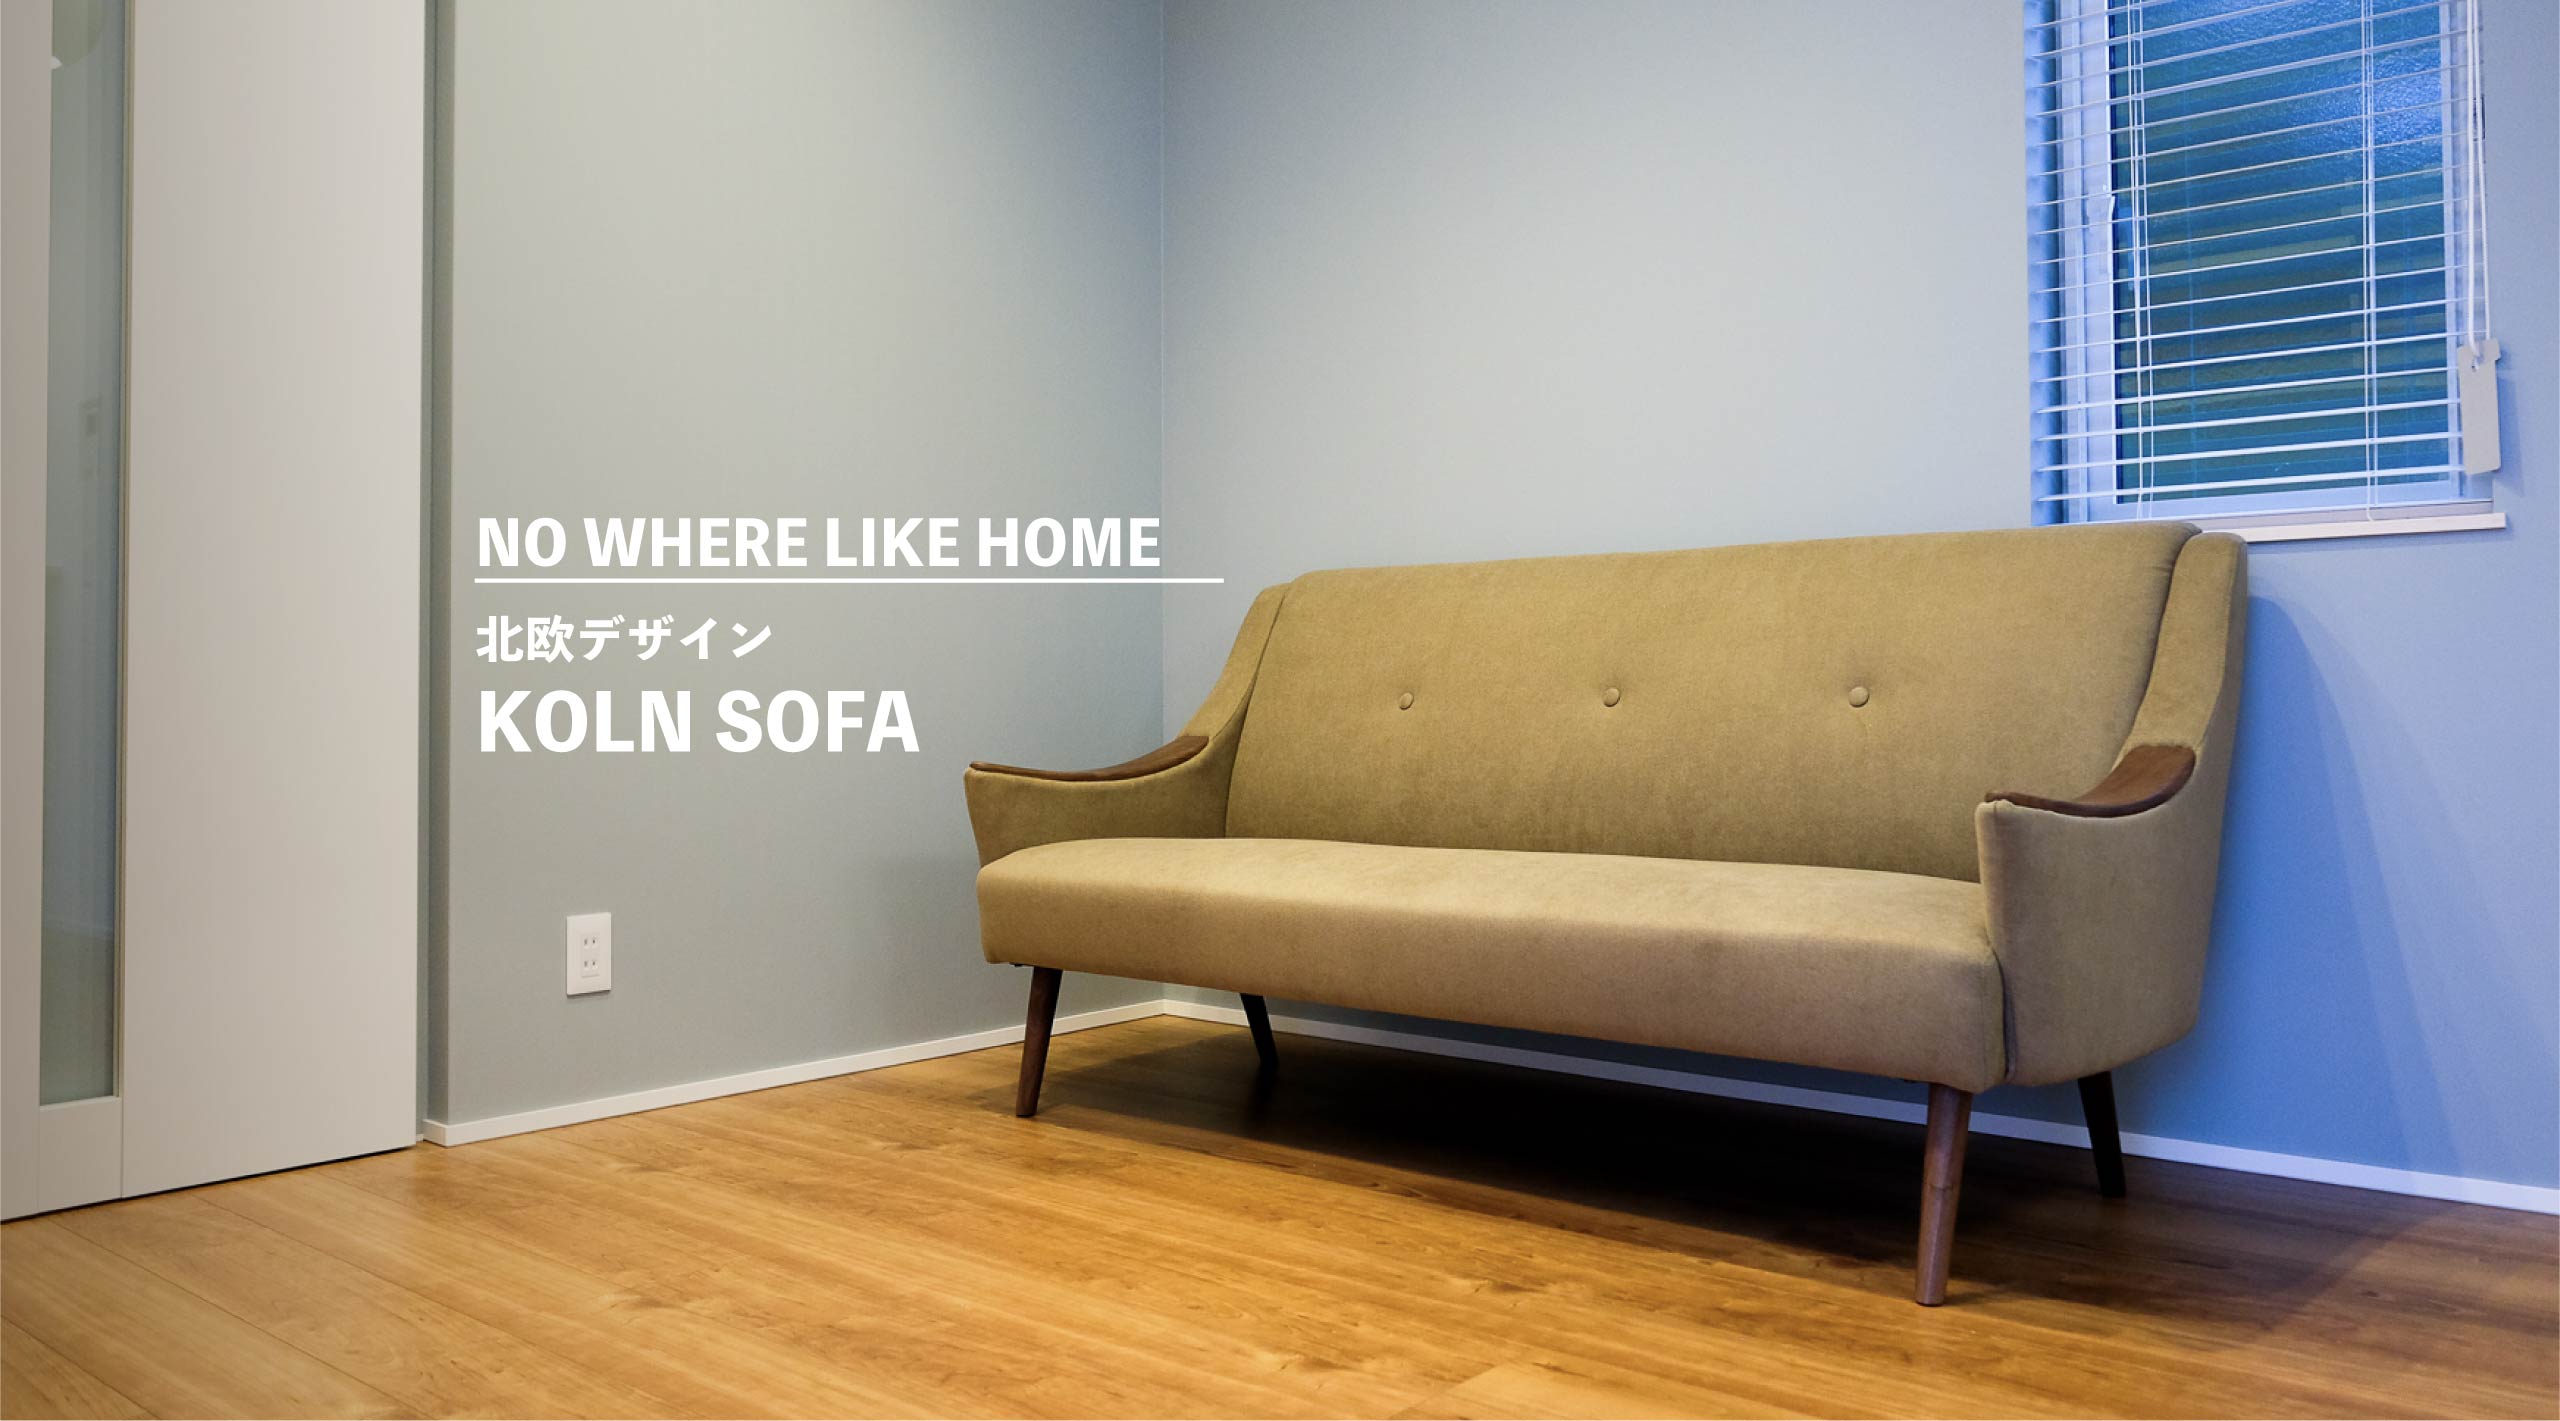 北欧感のあるソファを選ぶならこれがオススメ。『NO WHERE LIKE HOME